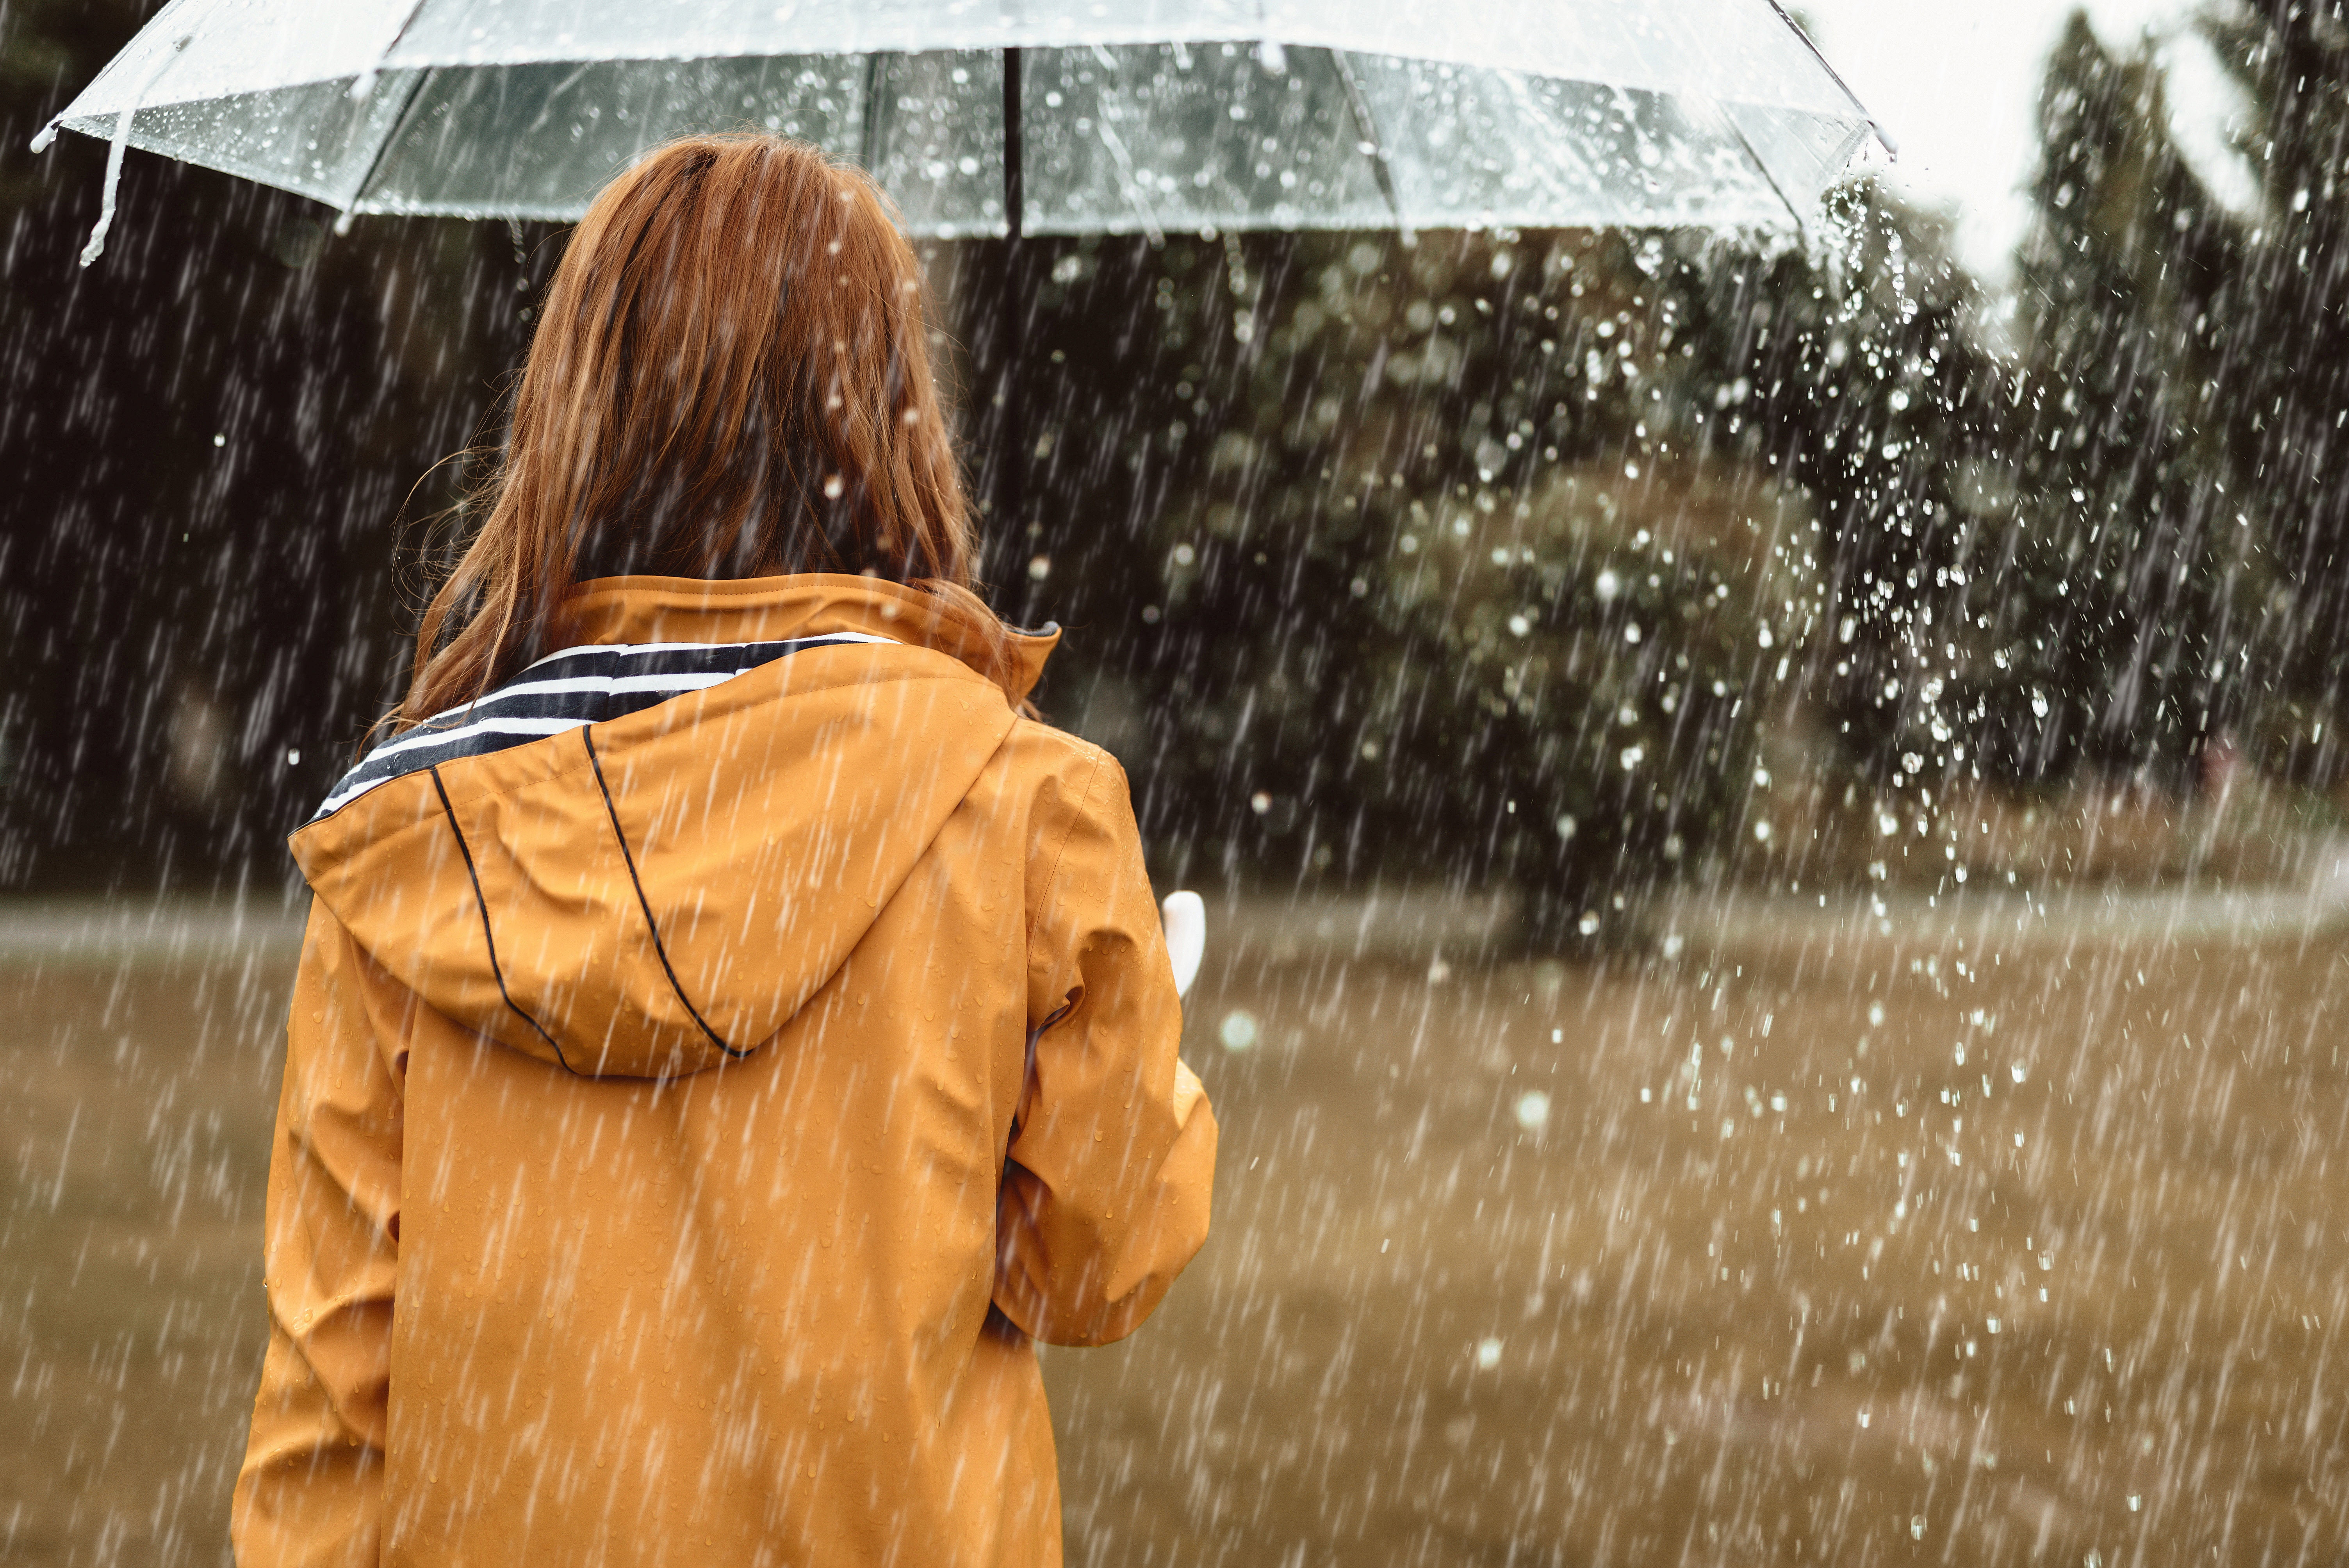 Jente i gul regnjakke som står i regnet under en paraply. Foto